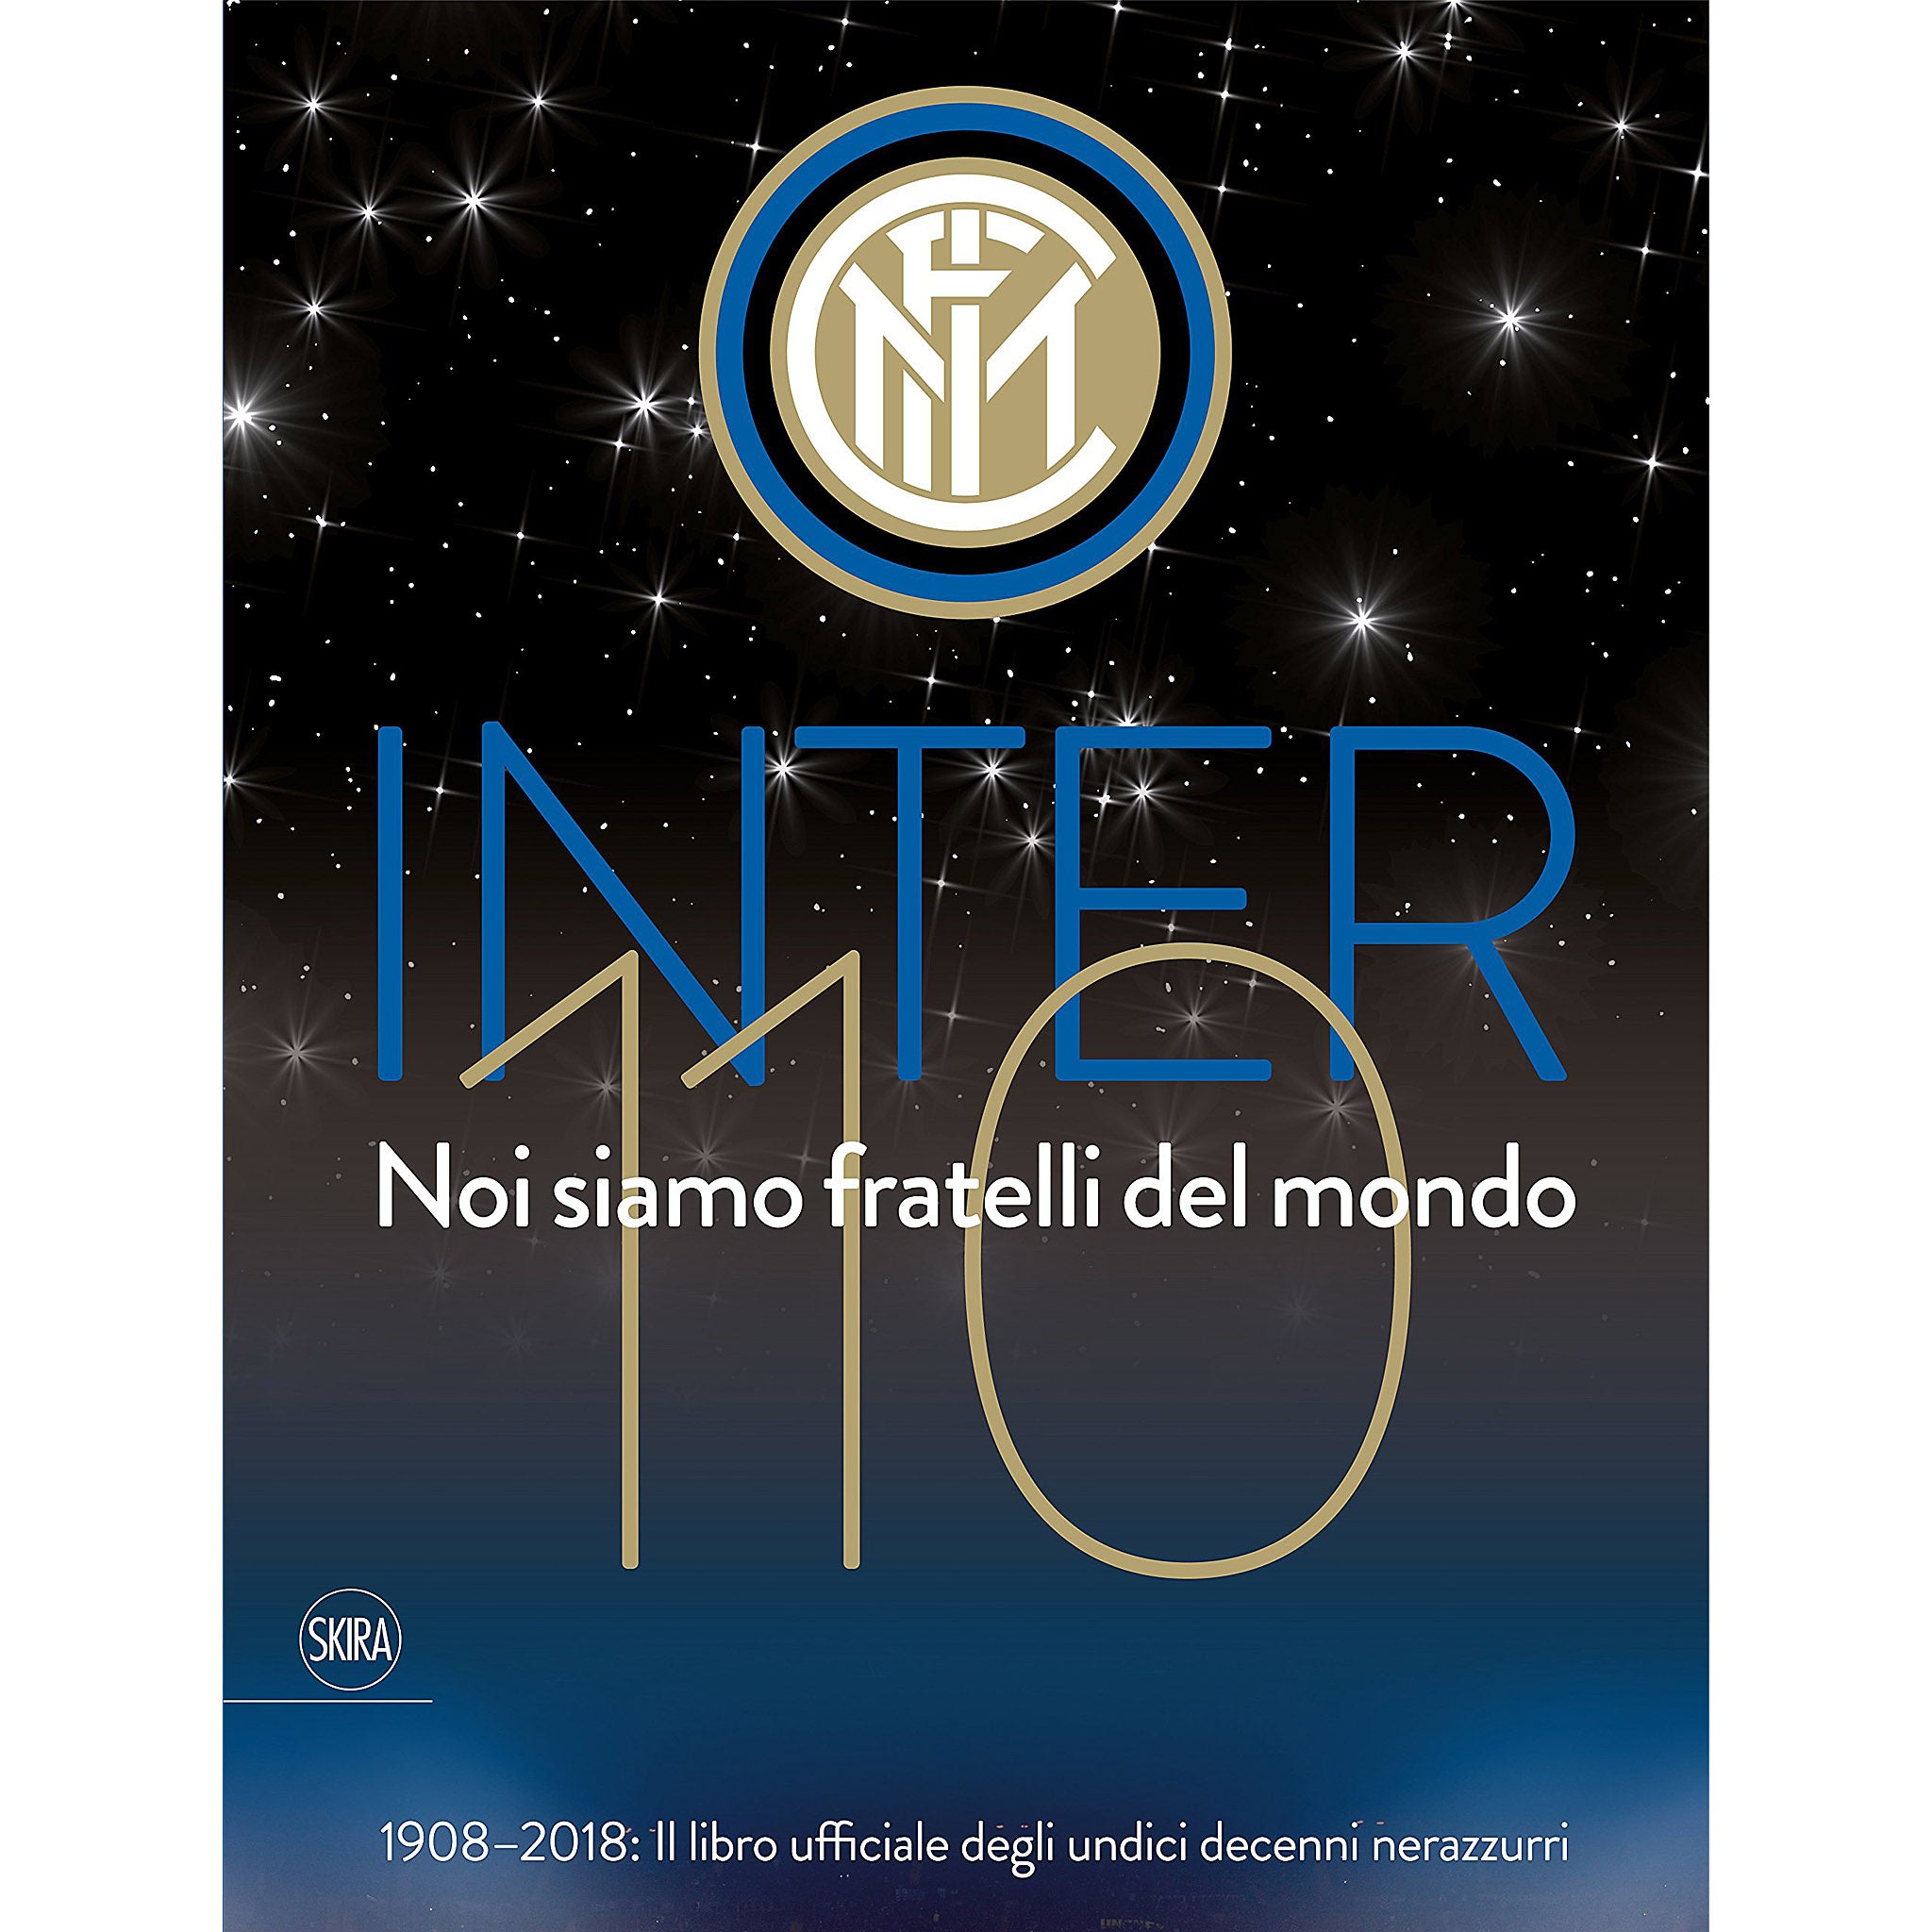 Inter 110 – FC Internazionale Milano 110th Anniversary